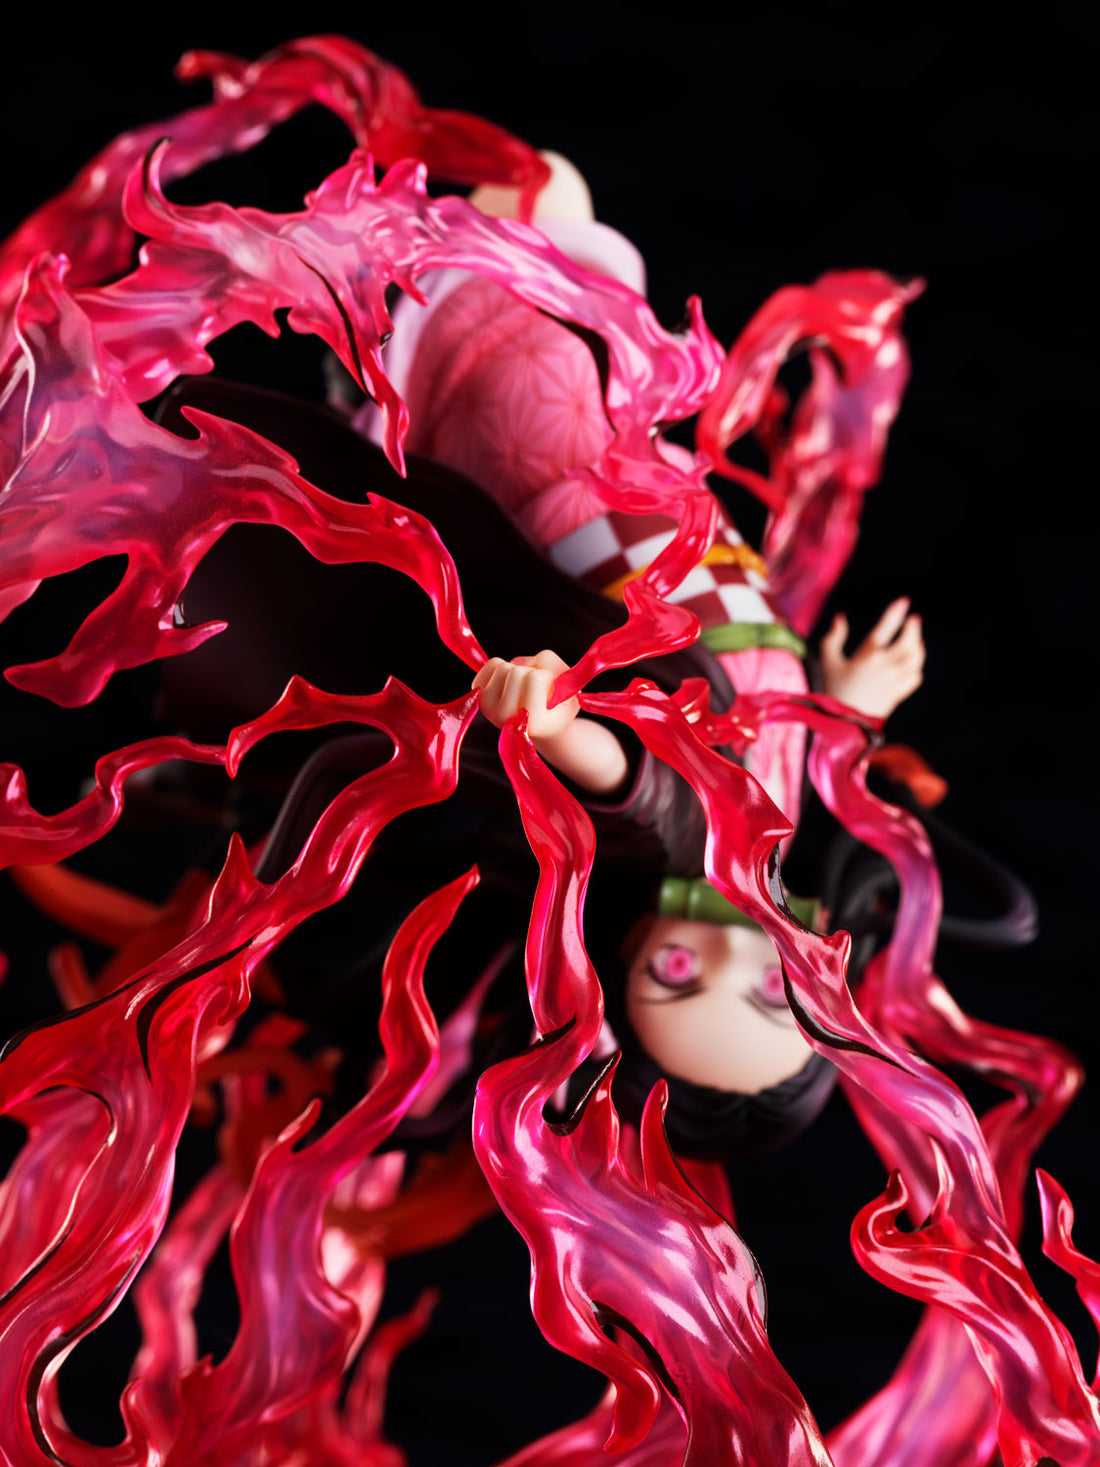 [PREORDER] Nezuko Kamado -Exploding Blood 1/8 Scale Figure - Glacier Hobbies - Aniplex